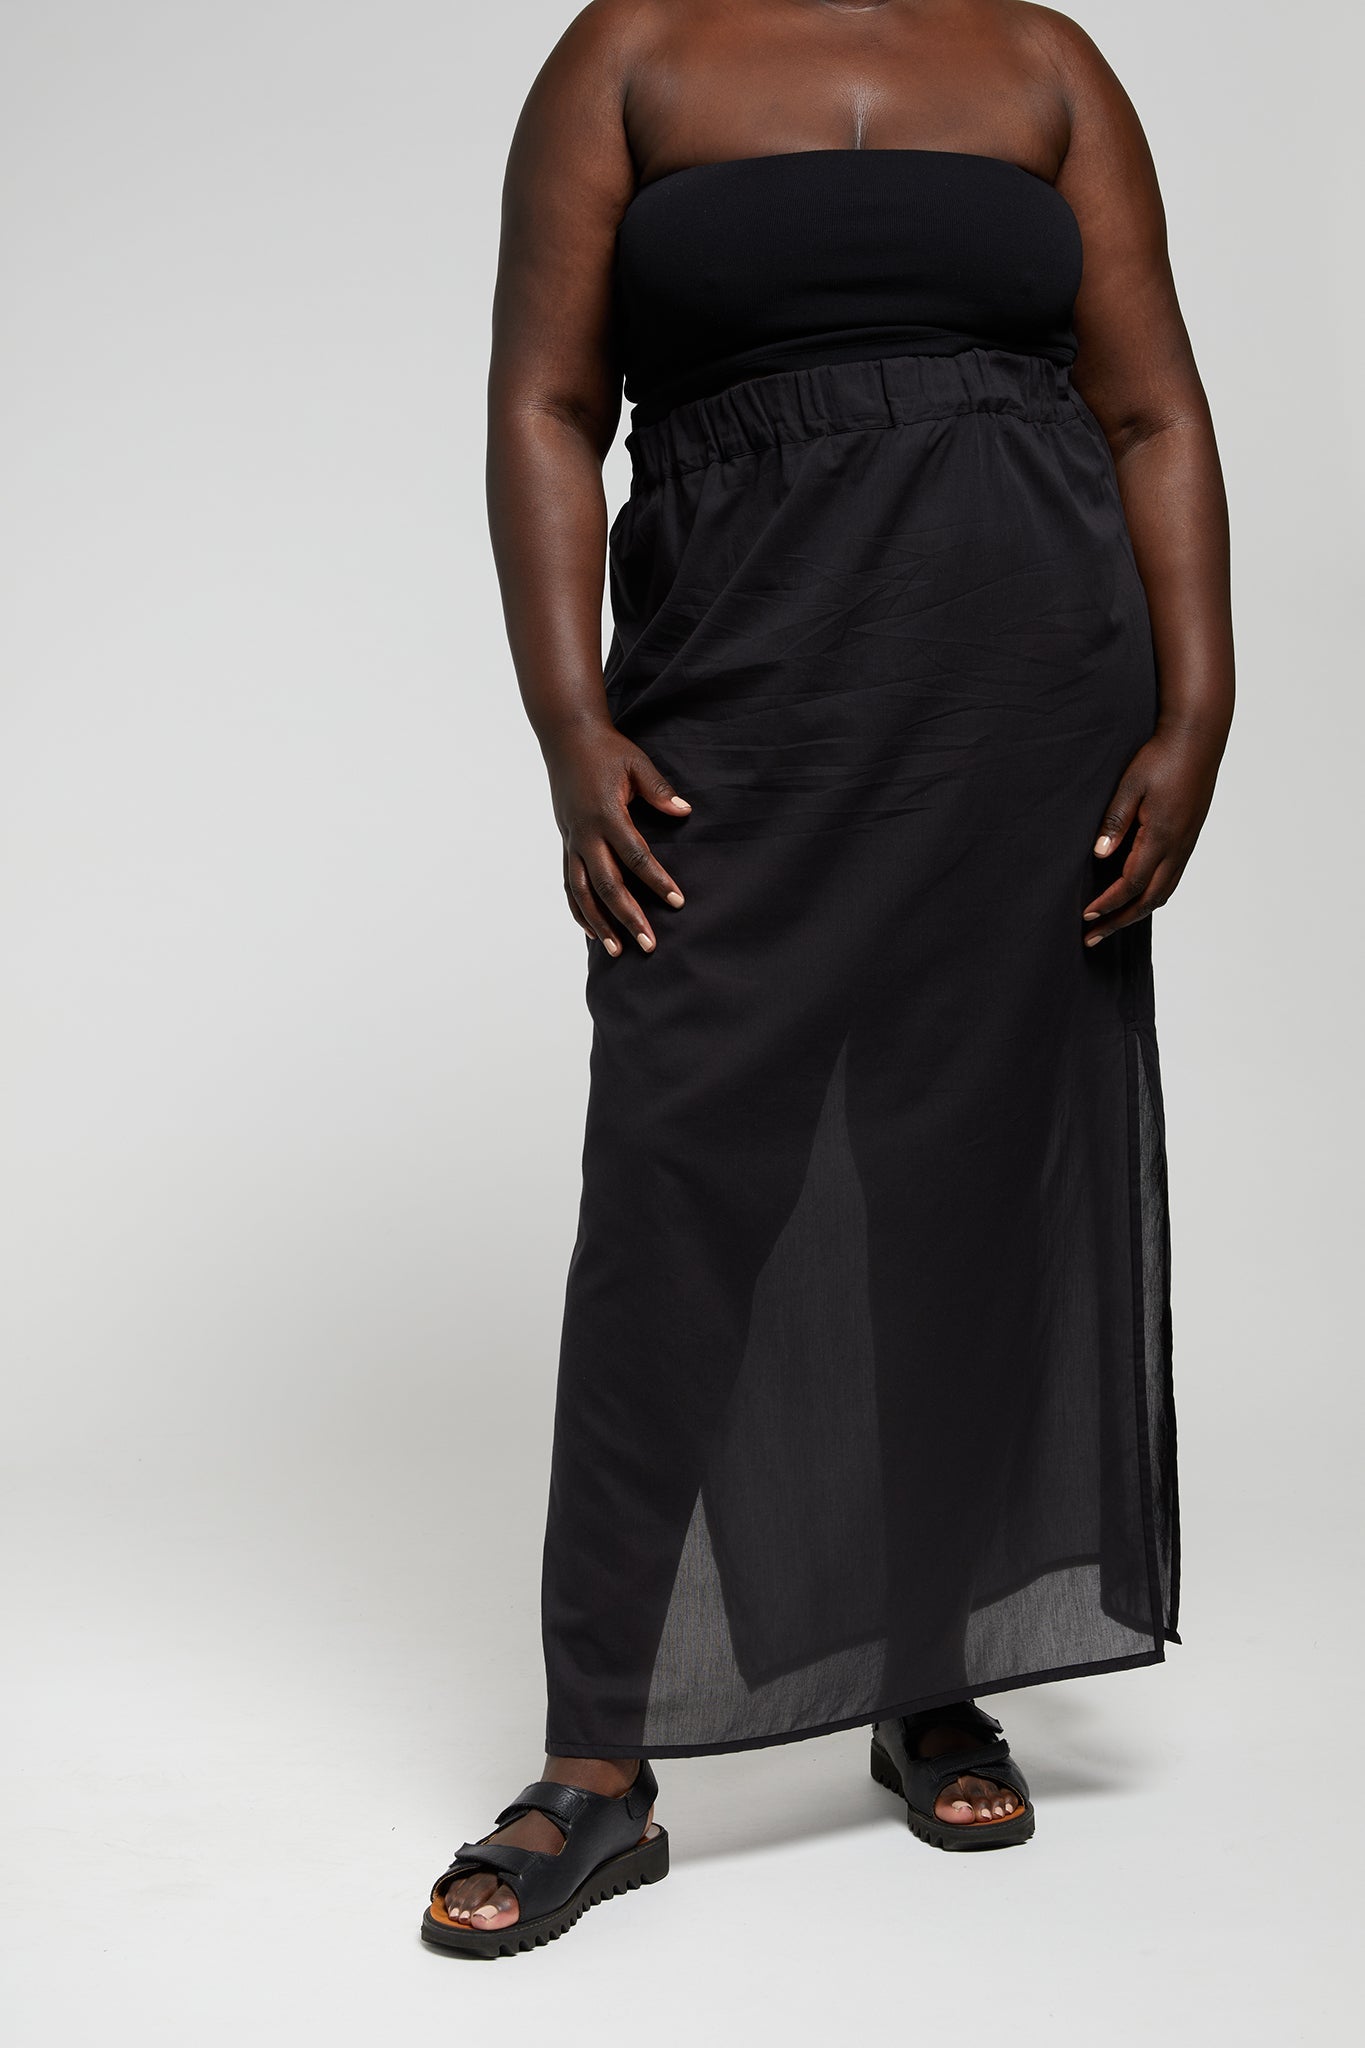 A.BCH A.31 Black Long Sheer Skirt Organic Cotton